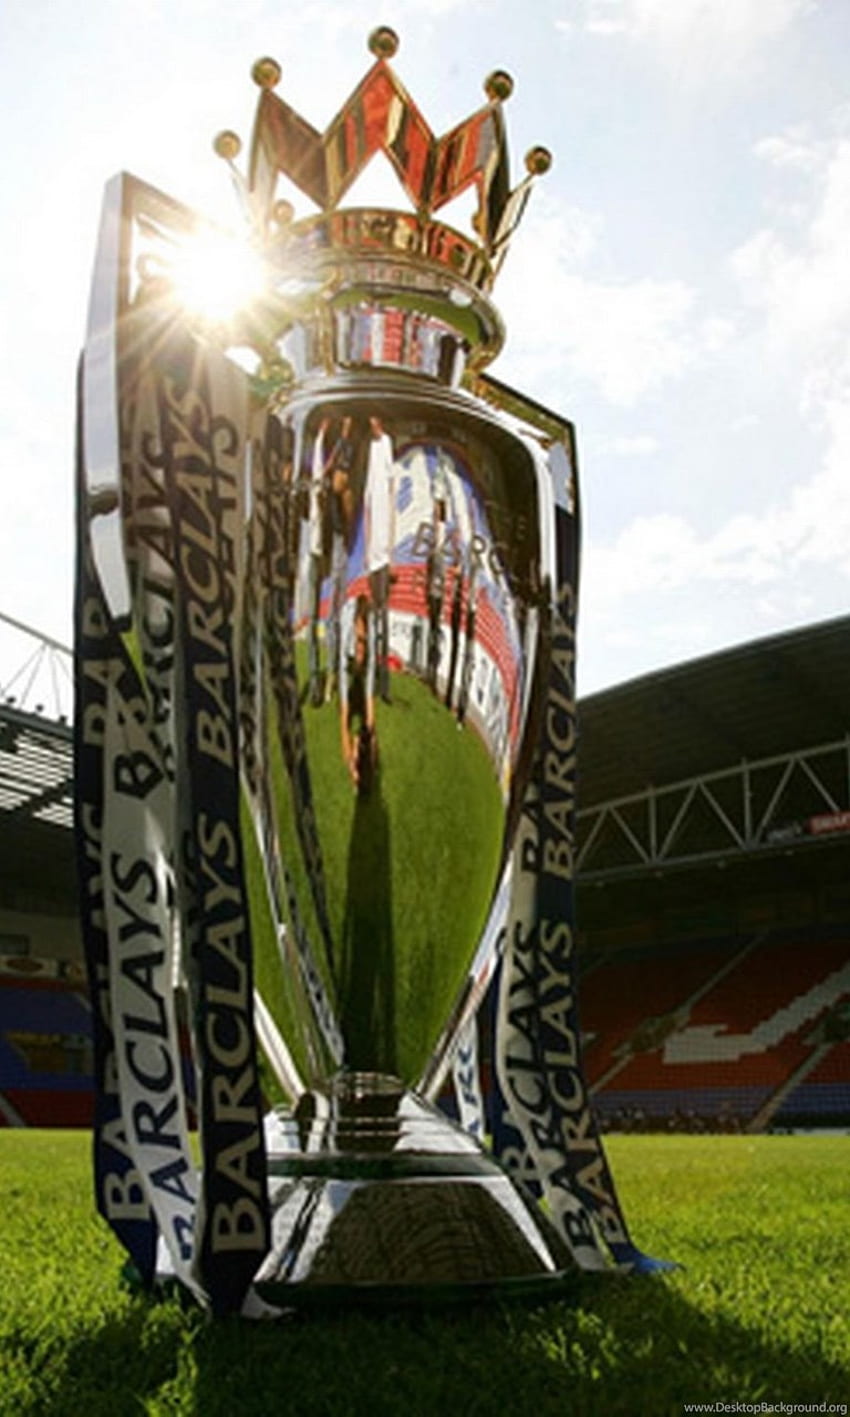 Barclays premier league trophy backgrounds HD wallpapers | Pxfuel